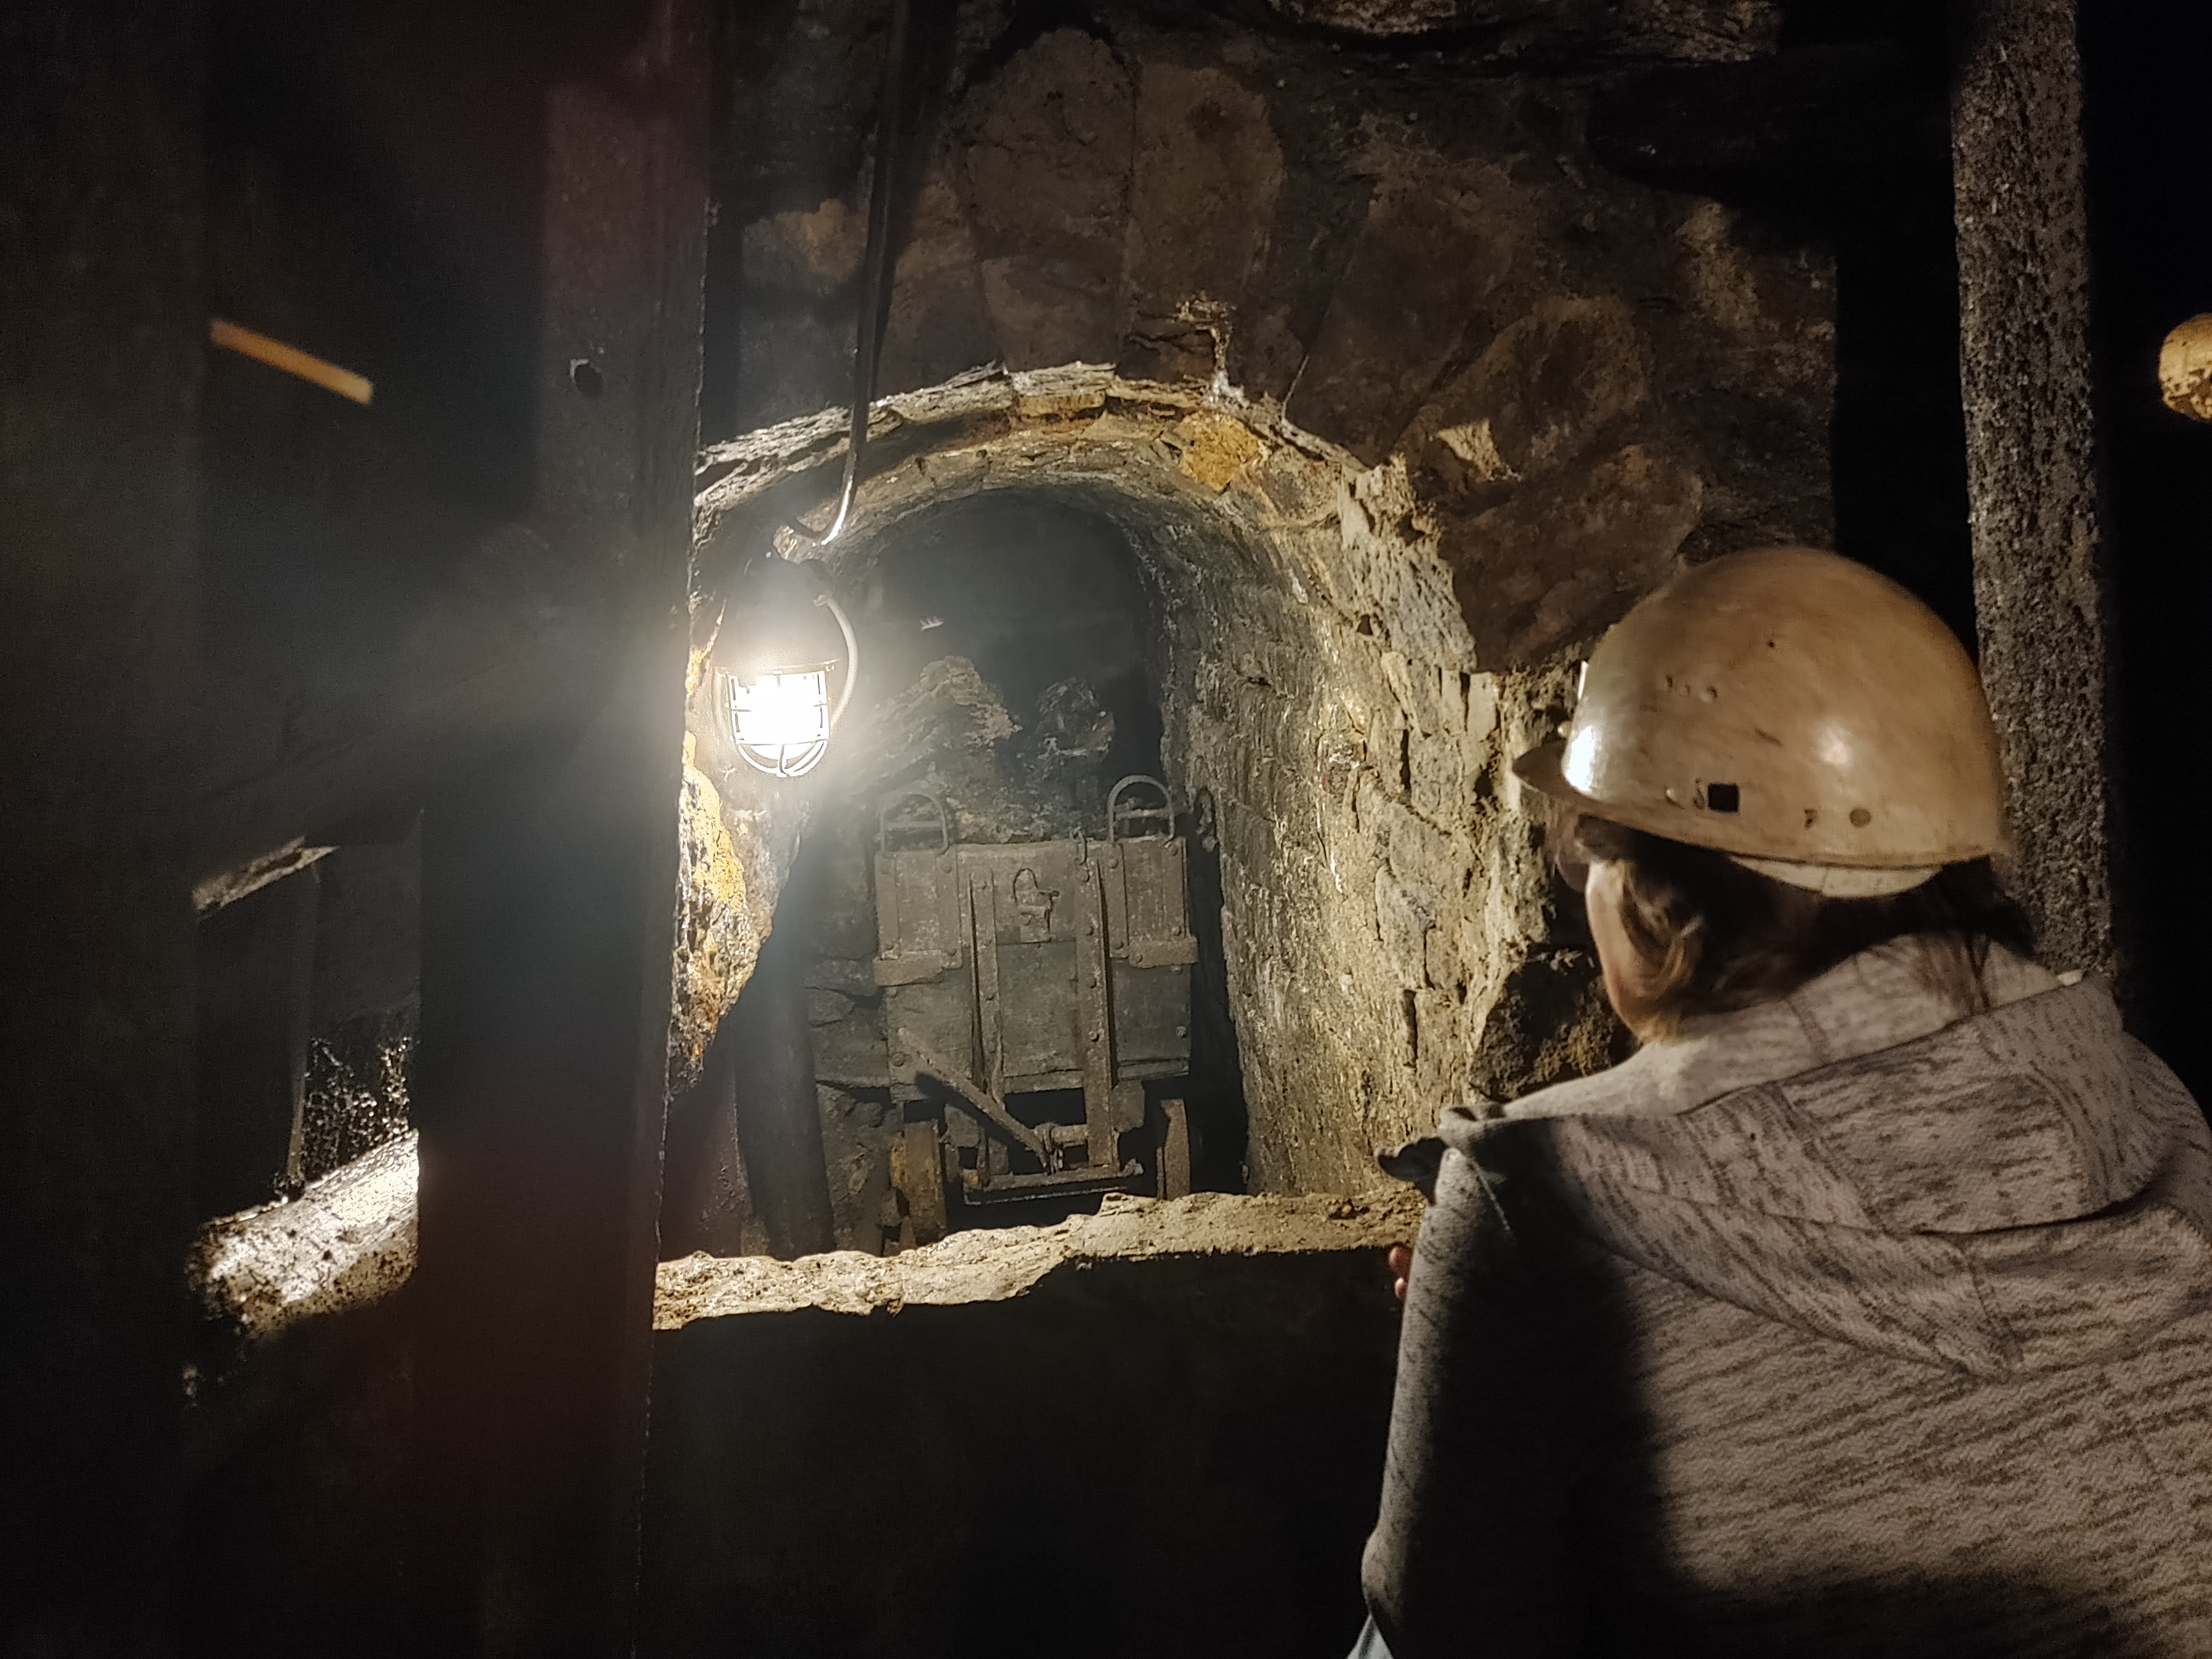 Das Foto zeigt eine Person von hinten, welche in den beleuchteten Gang eines Bergwerks schaut, in dem sich eine Lore mit Steinkohle befindet.